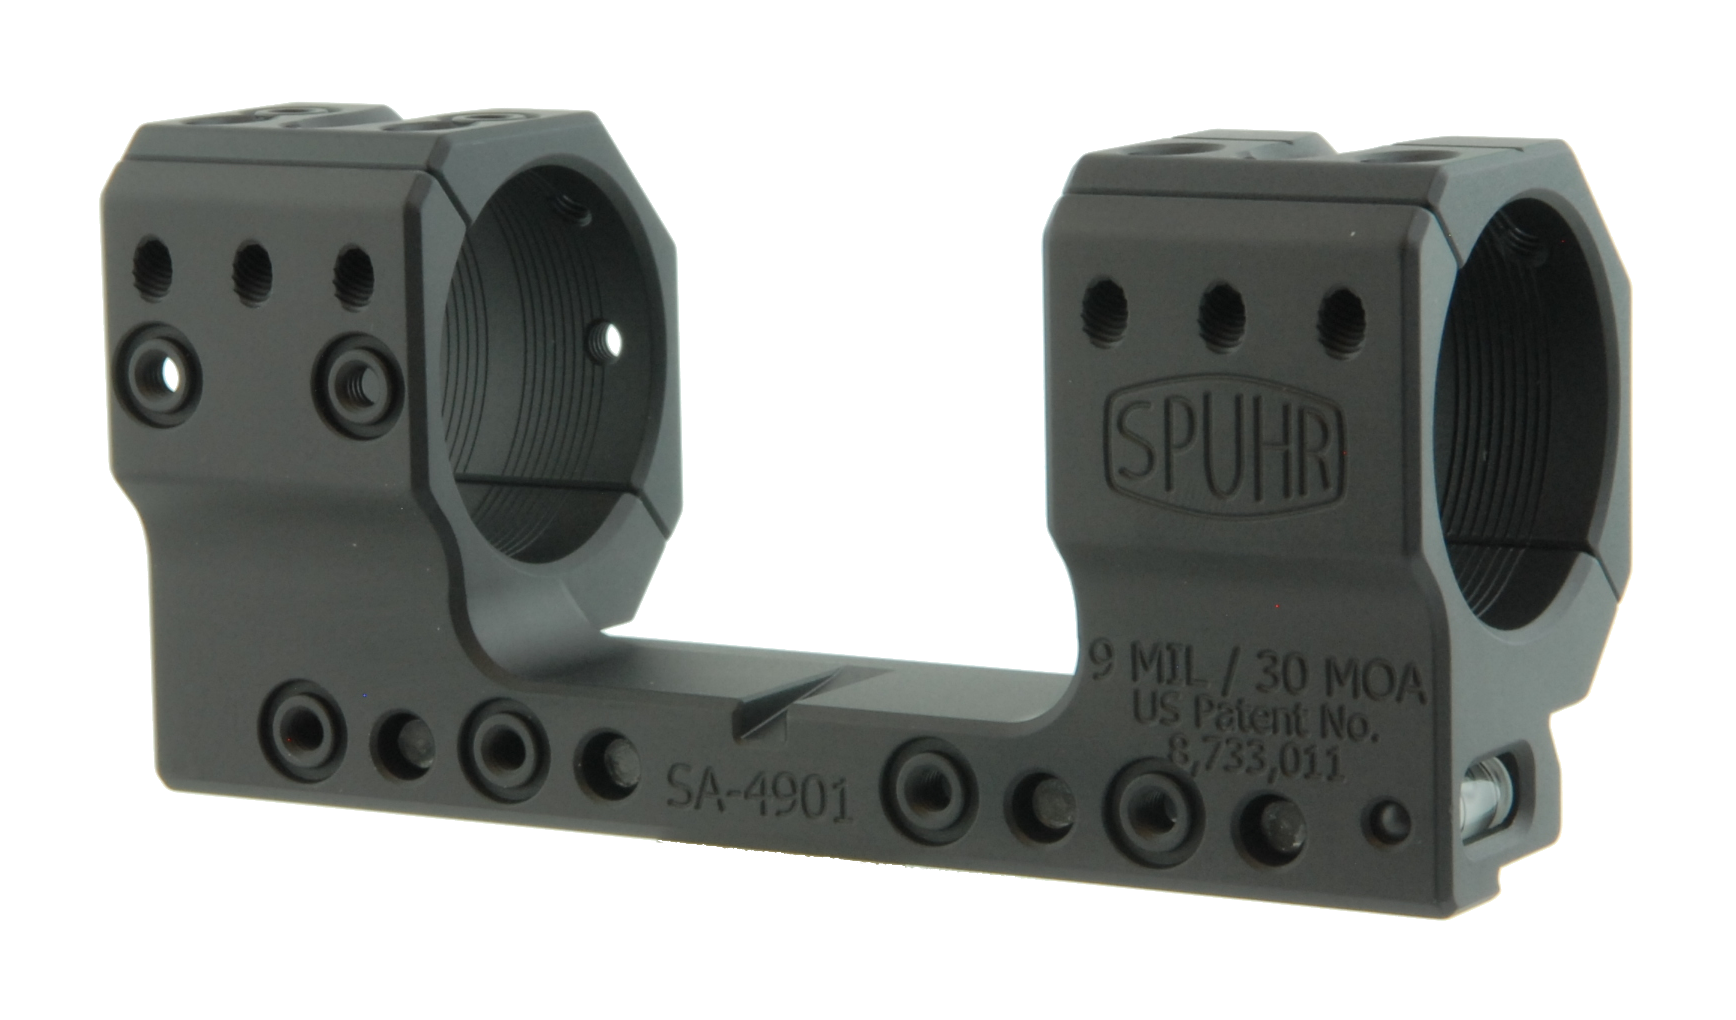 Тактический кронштейн SPUHR D34мм для установки на 12mm (Accuracy), H35мм, наклон 9MIL/ 30.9MOA  (SA-4901) купить по оптимальной цене,  доставка по России, гарантия качества